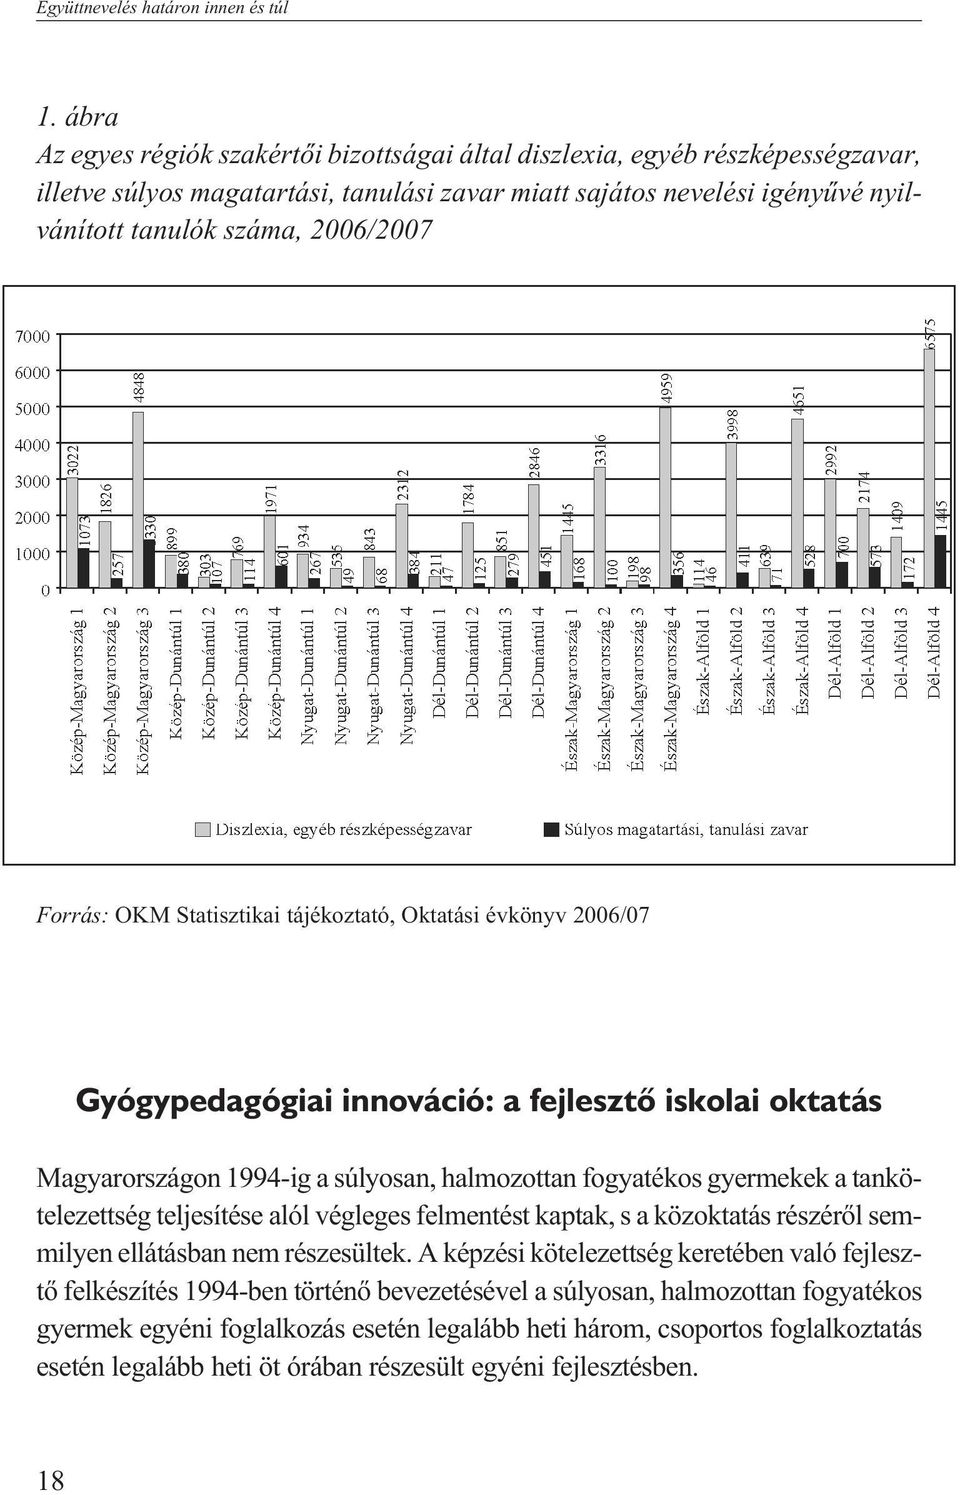 Forrás: OKM Statisztikai tájékoztató, Oktatási évkönyv 2006/07 Gyógypedagógiai innováció: a fejlesztõ iskolai oktatás Magyarországon 1994-ig a súlyosan, halmozottan fogyatékos gyermekek a